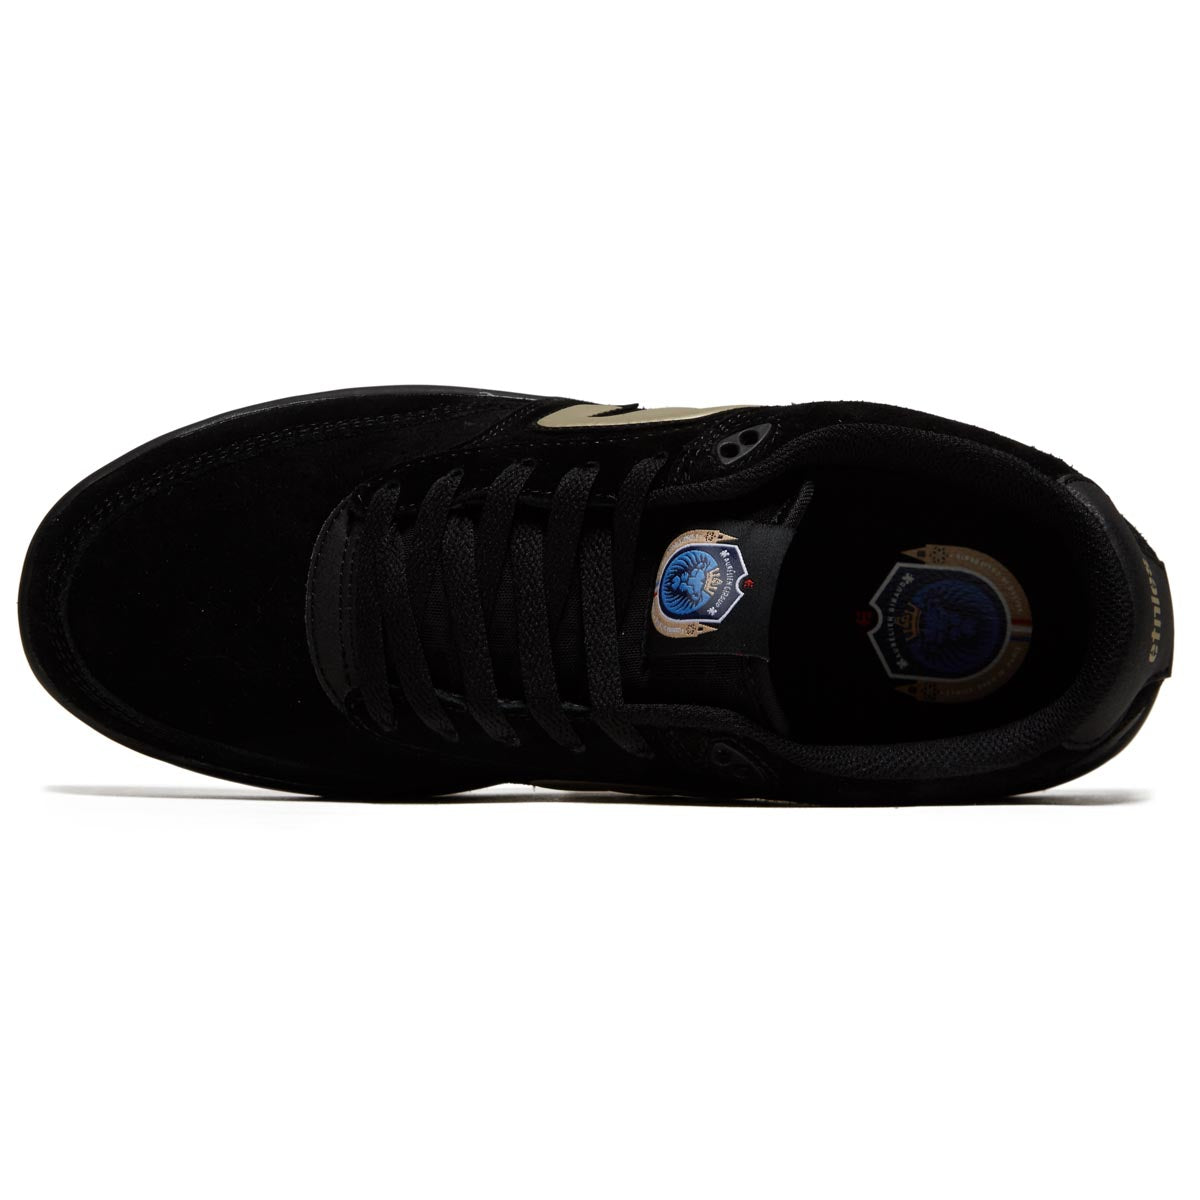 Etnies The Aurelien Michelin Shoes - Black/Gold image 3